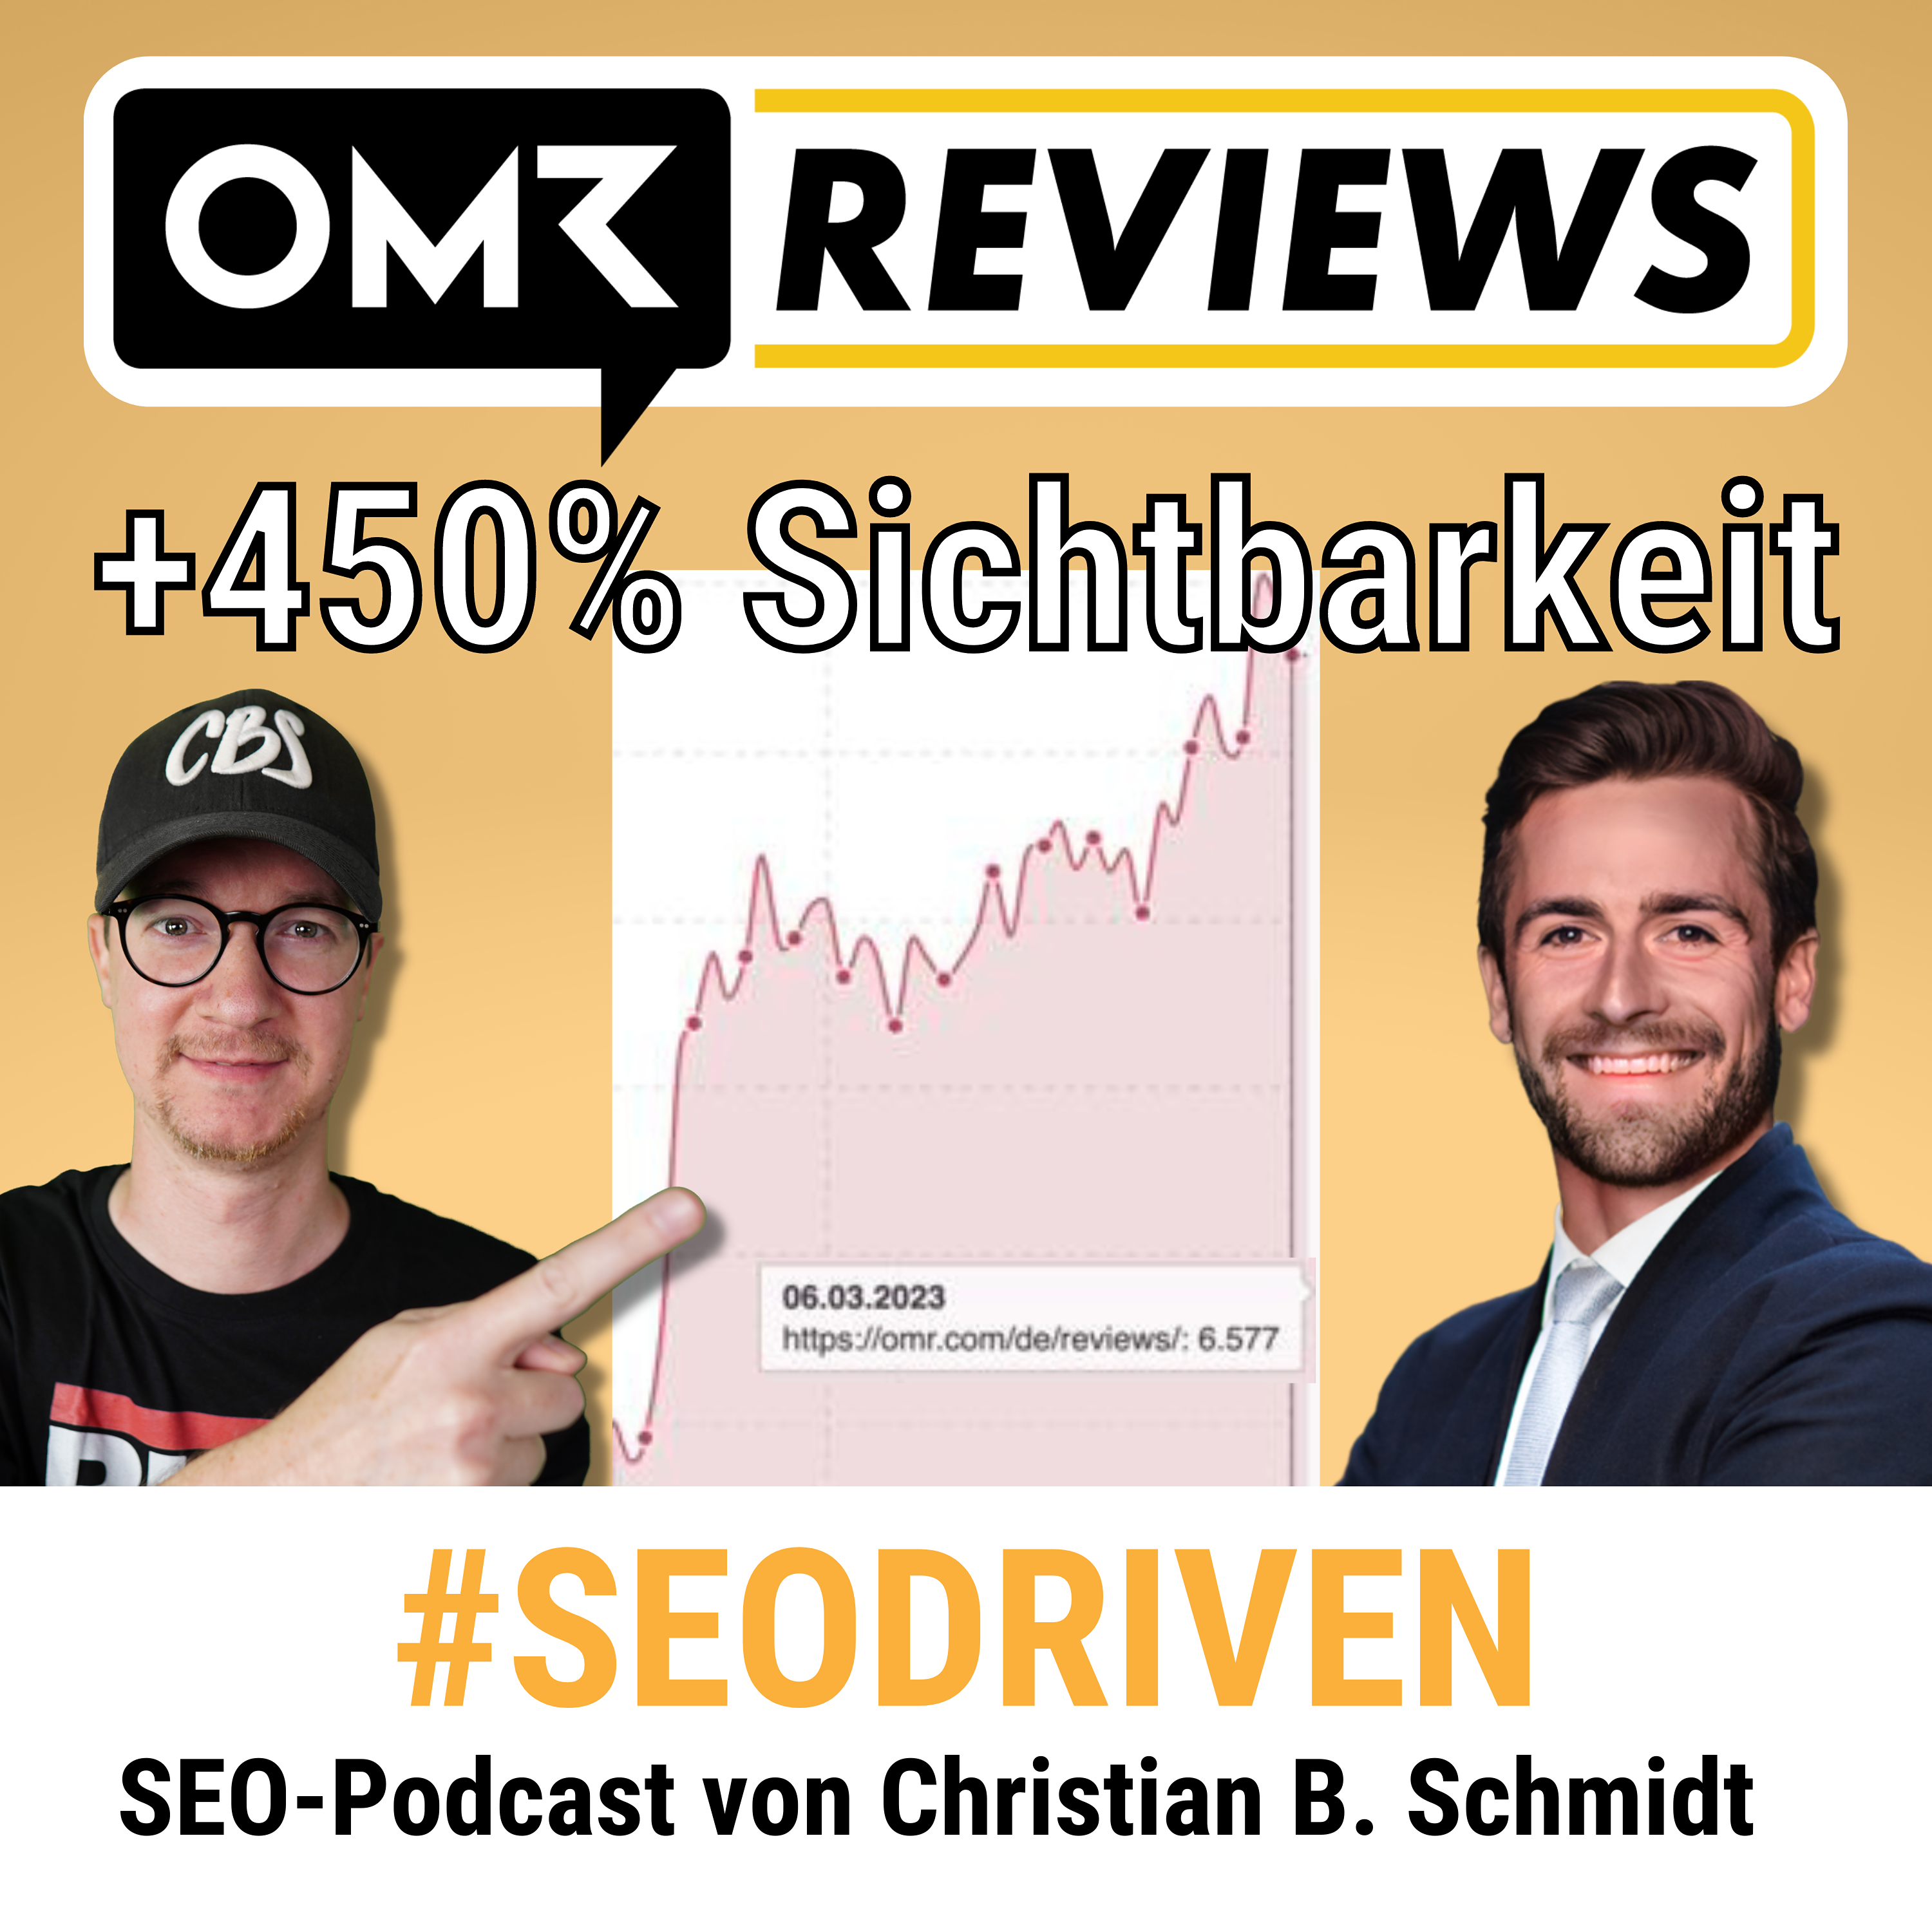 OMR Reviews: +450% Sichtbarkeit mit einfachem SEO-Trick | Manuel Gerlach